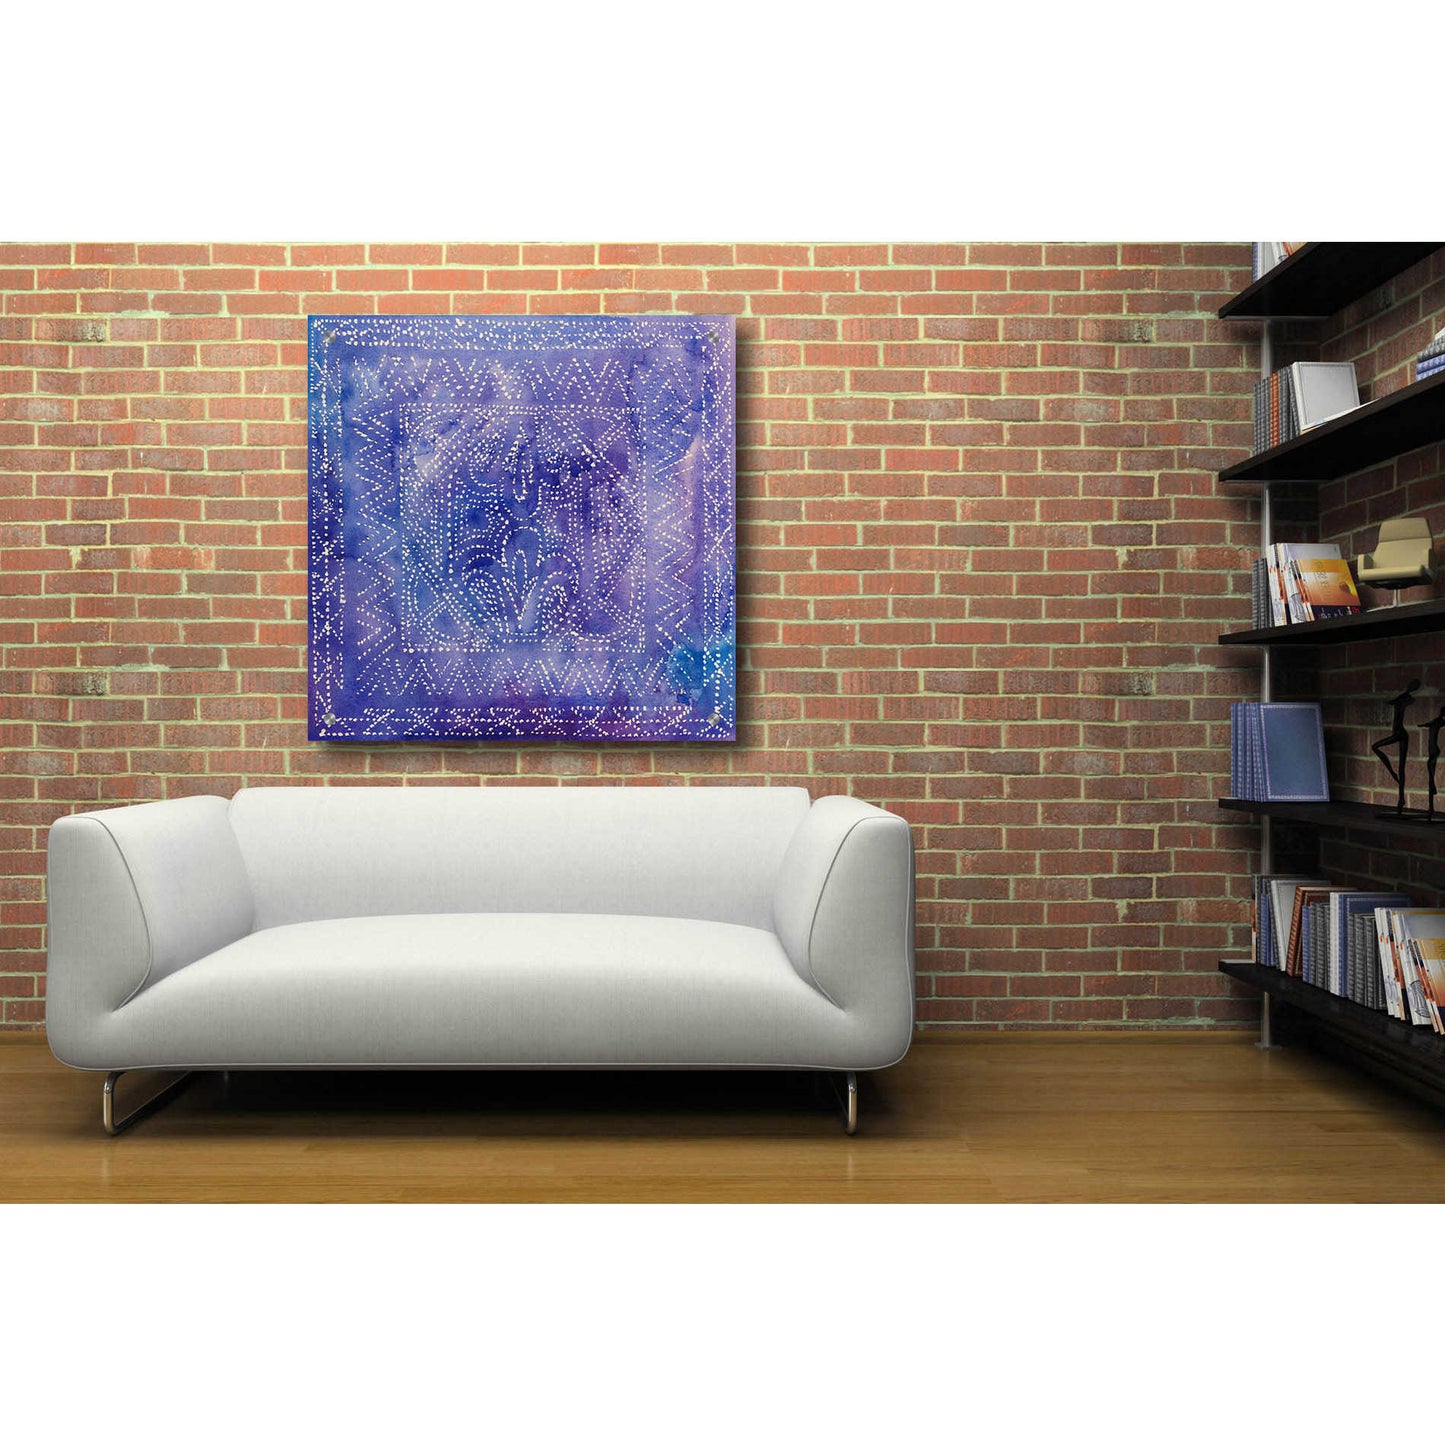 Epic Art 'Batik Nebula II' by Grace Popp, Acrylic Glass Wall Art,36x36